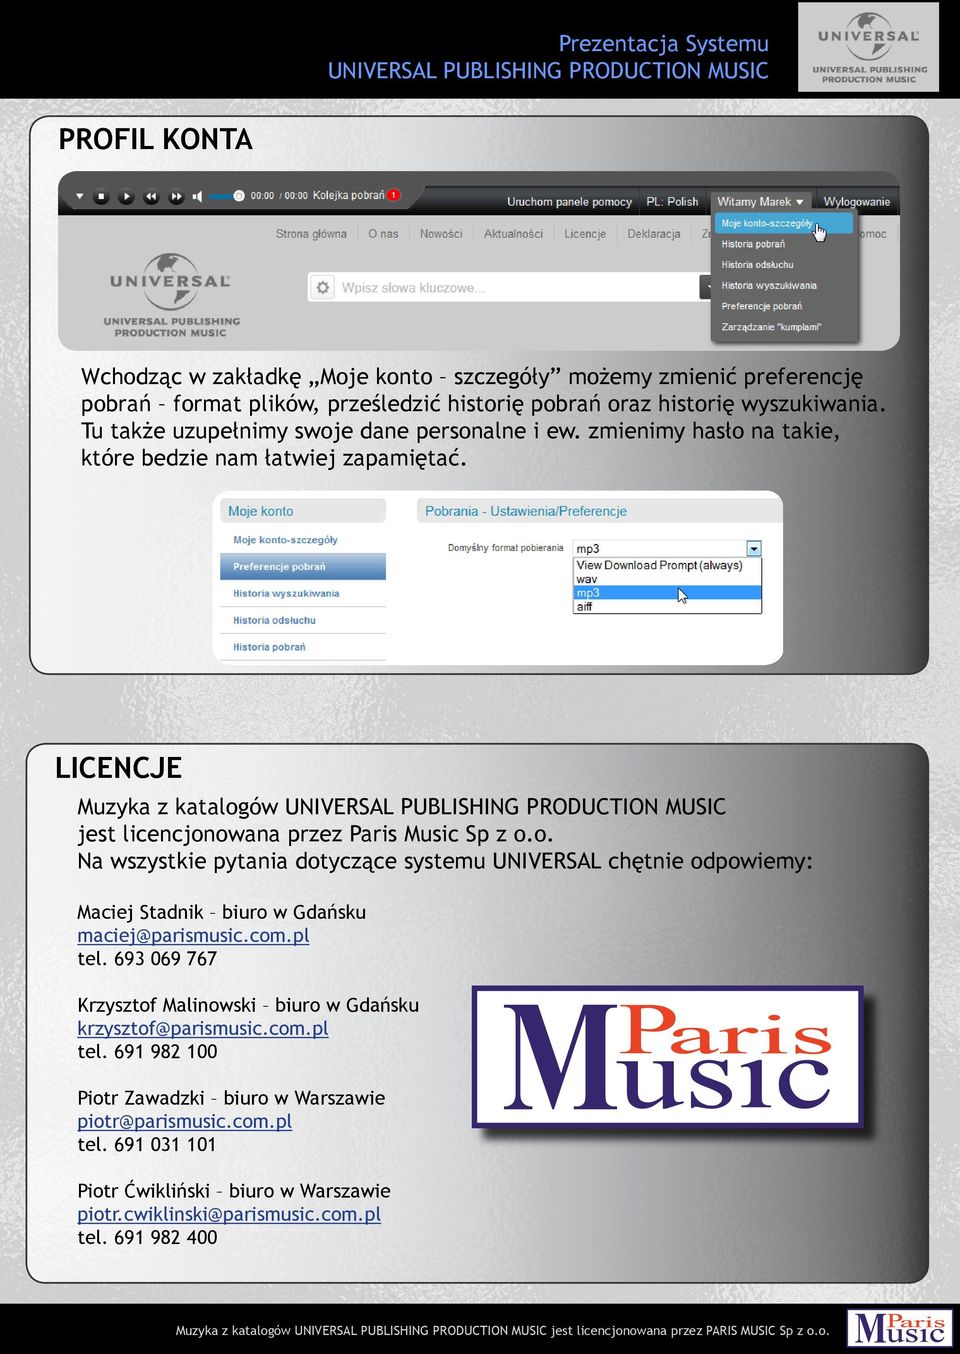 LICENCJE Muzyka z katalogów jest licencjonowana przez Paris Music Sp z o.o. Na wszystkie pytania dotyczące systemu UNIVERSAL chętnie odpowiemy: Maciej Stadnik biuro w Gdańsku maciej@parismusic.